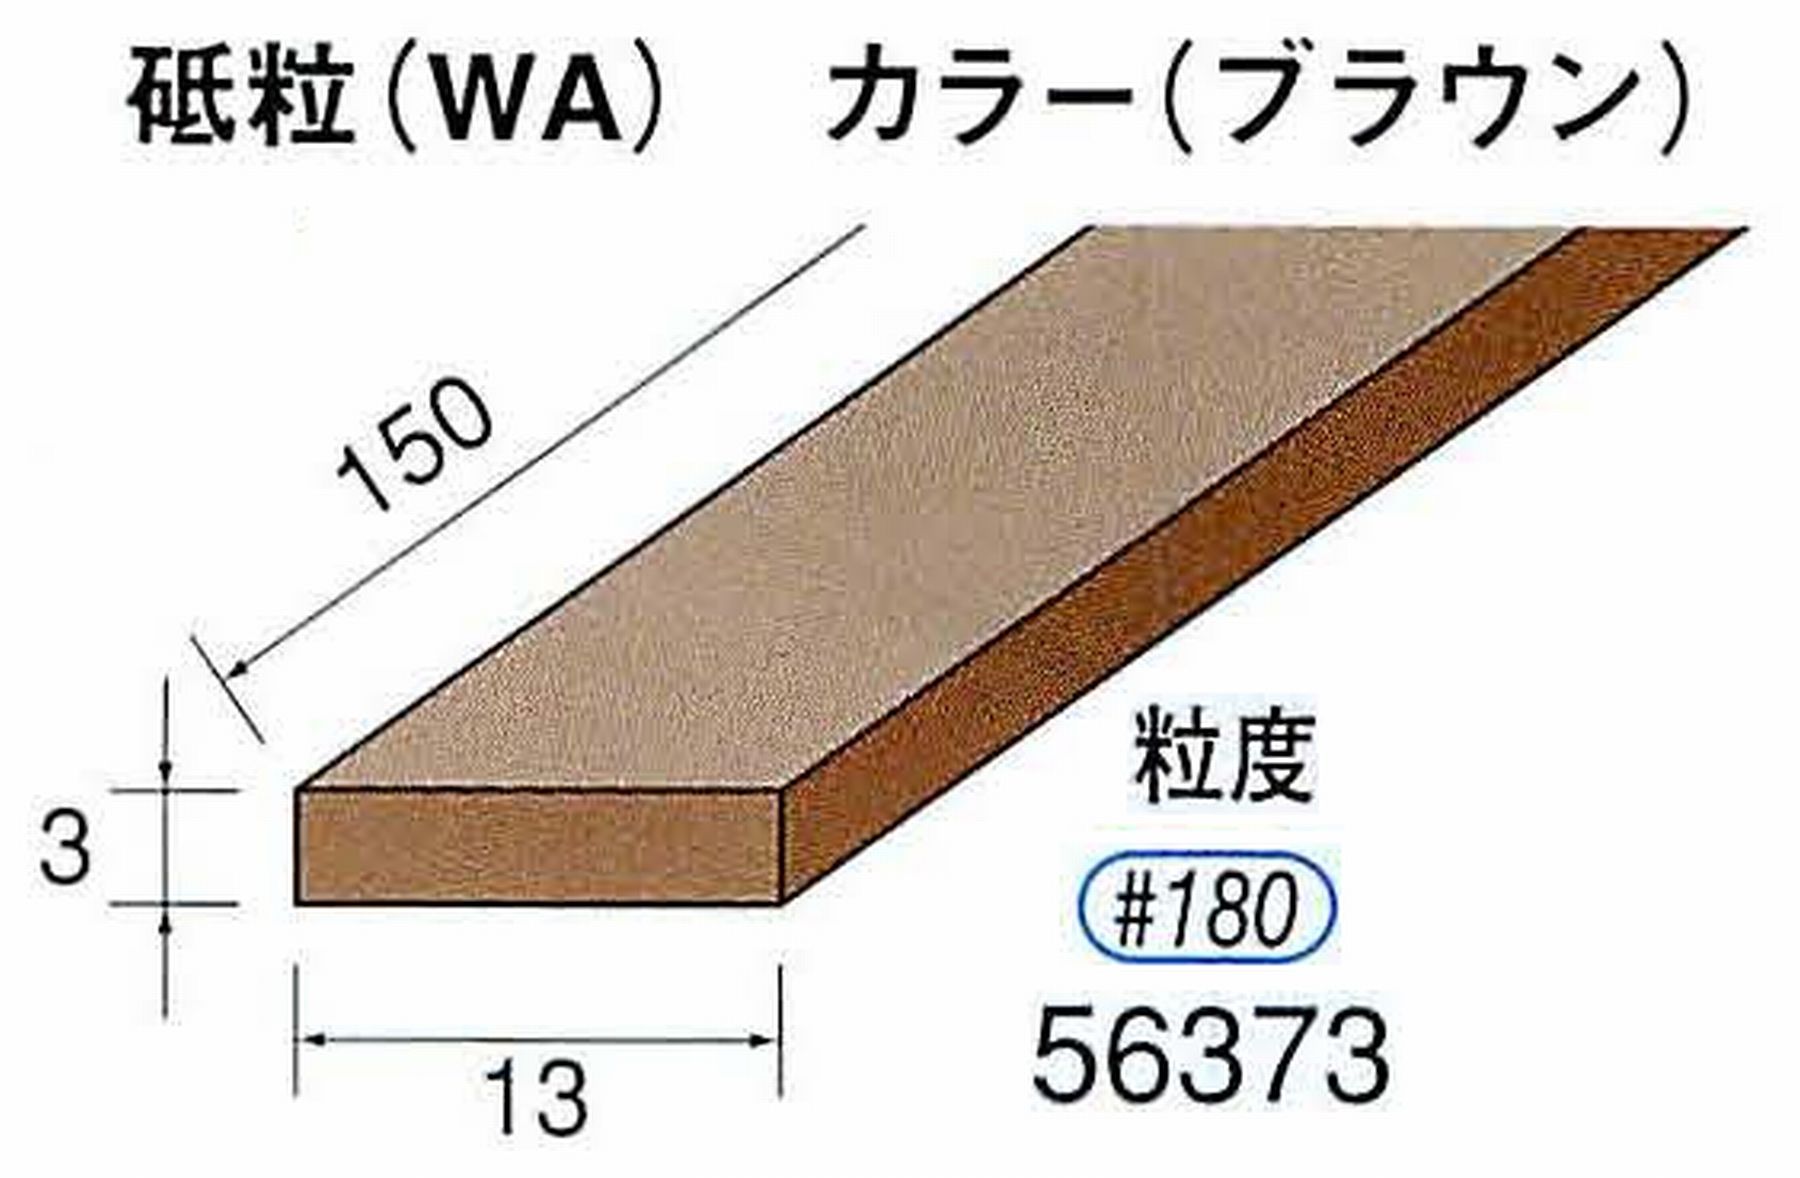 ナカニシ/NAKANISHI スティック砥石 ブラウン・フィニッシュシリーズ 砥粒(WA) 56373